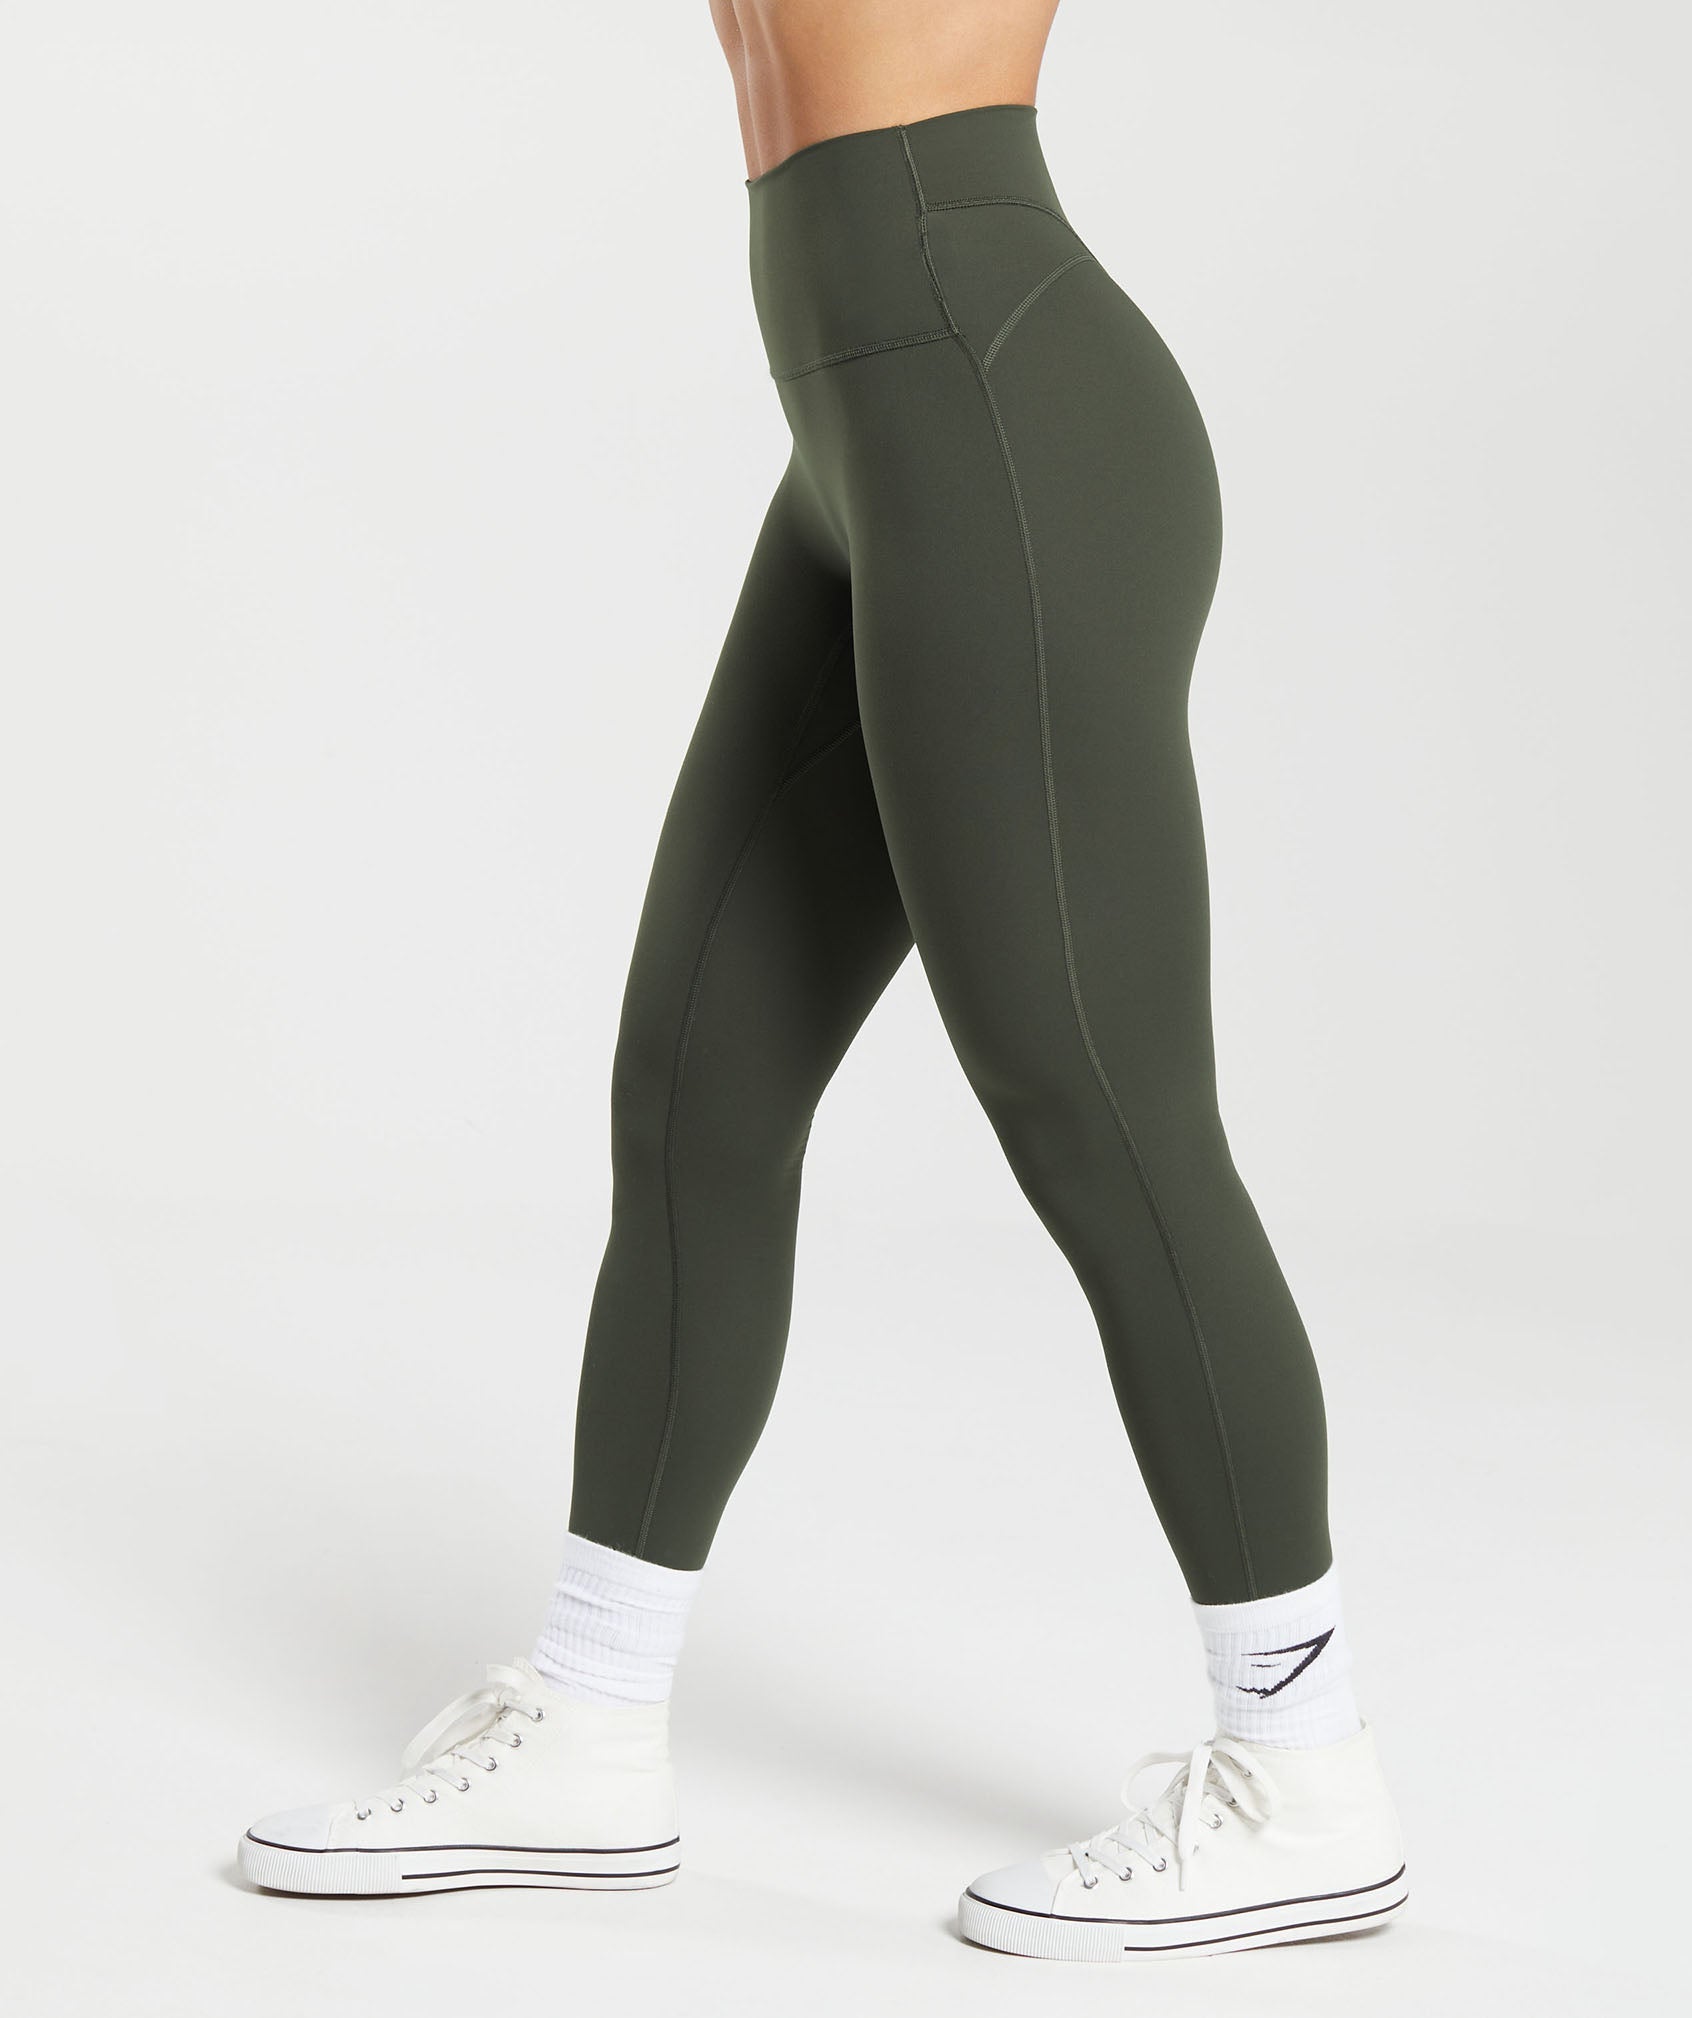 Basic Legging Set- Olive (Plus) - 3X